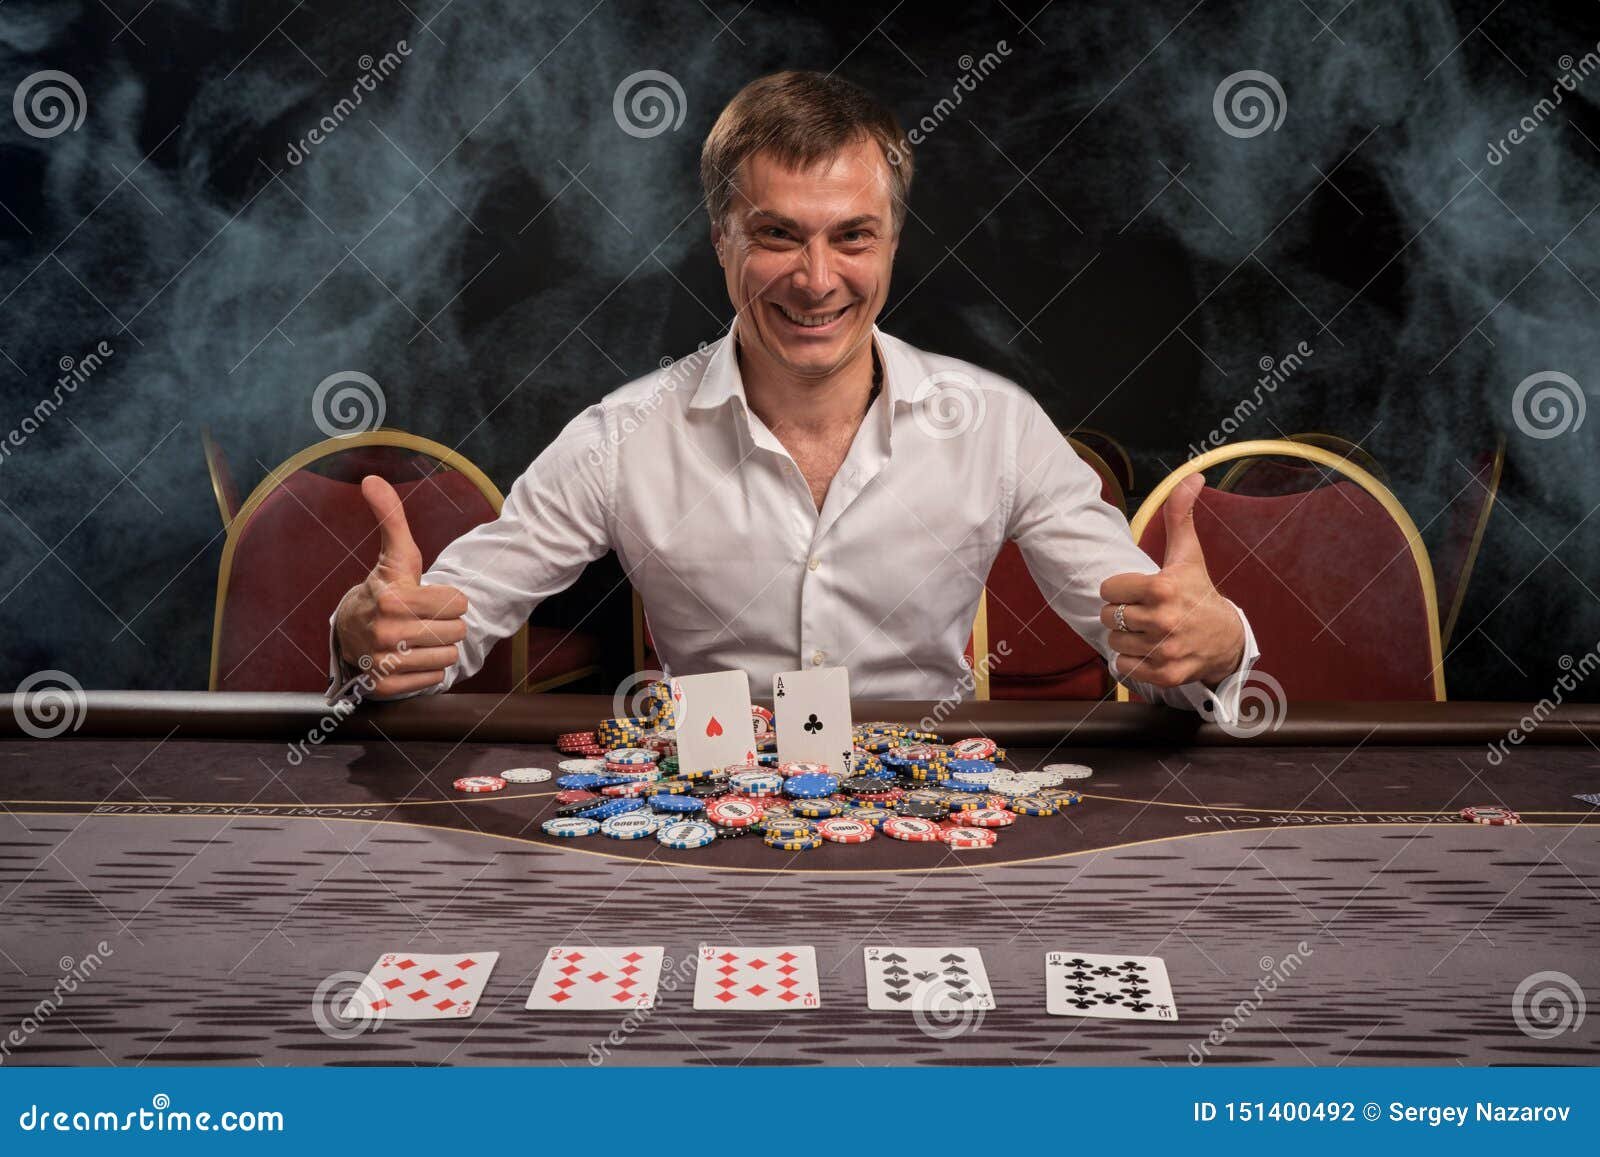 imagen de personas jugando emocionadas en casino